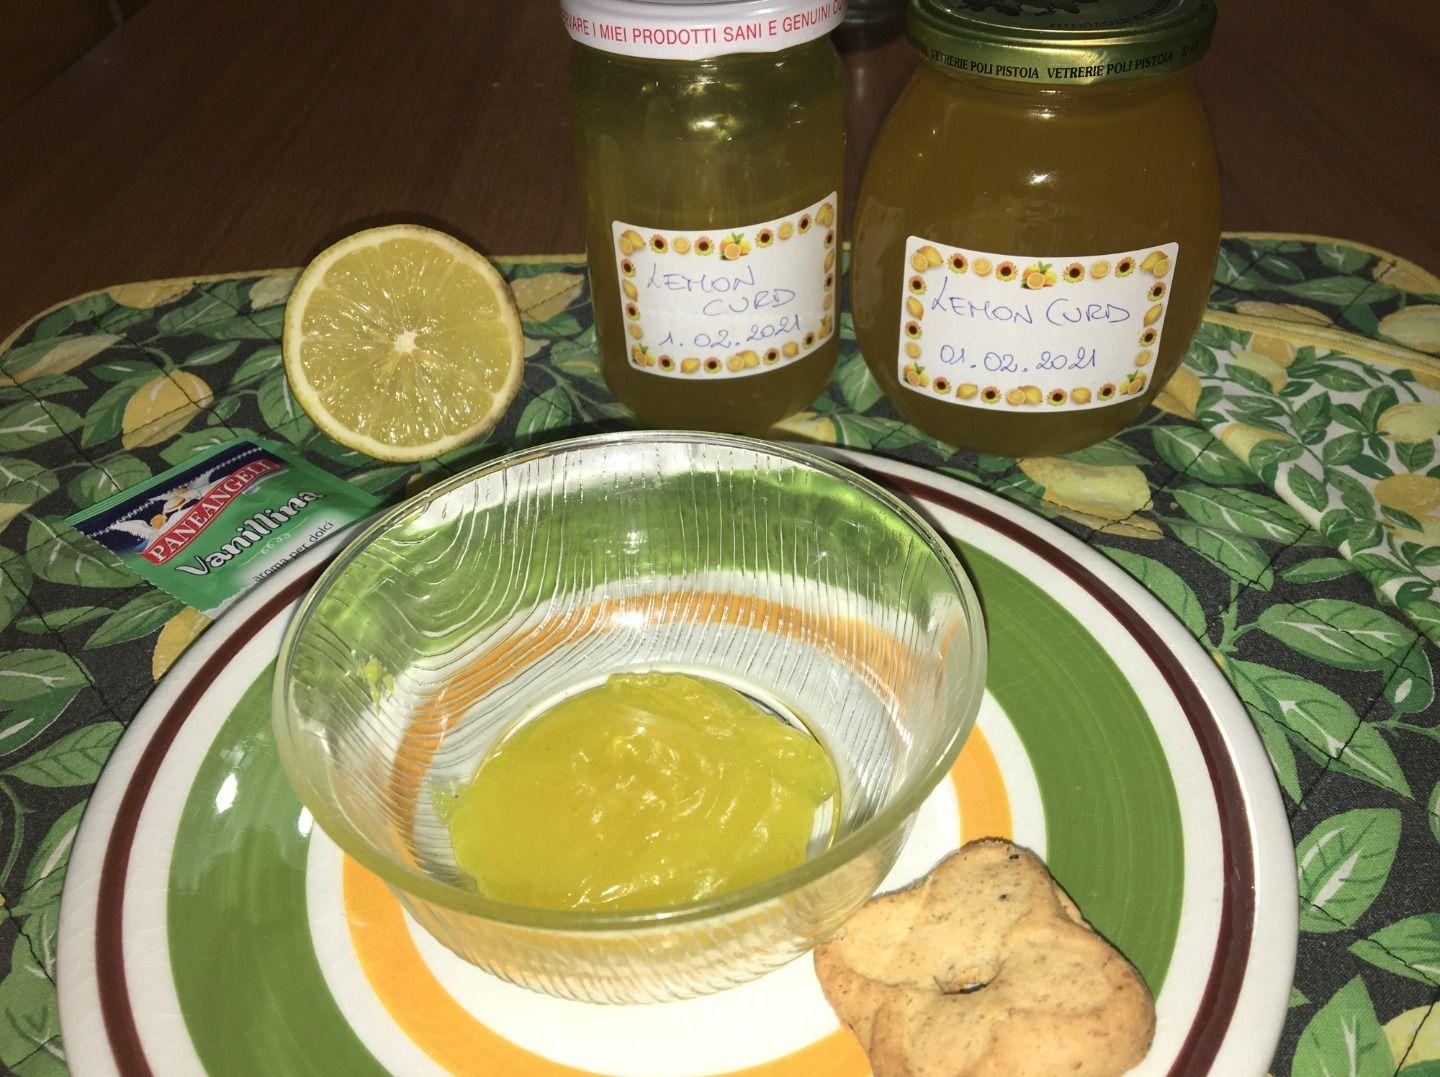 Lemon curd vegano